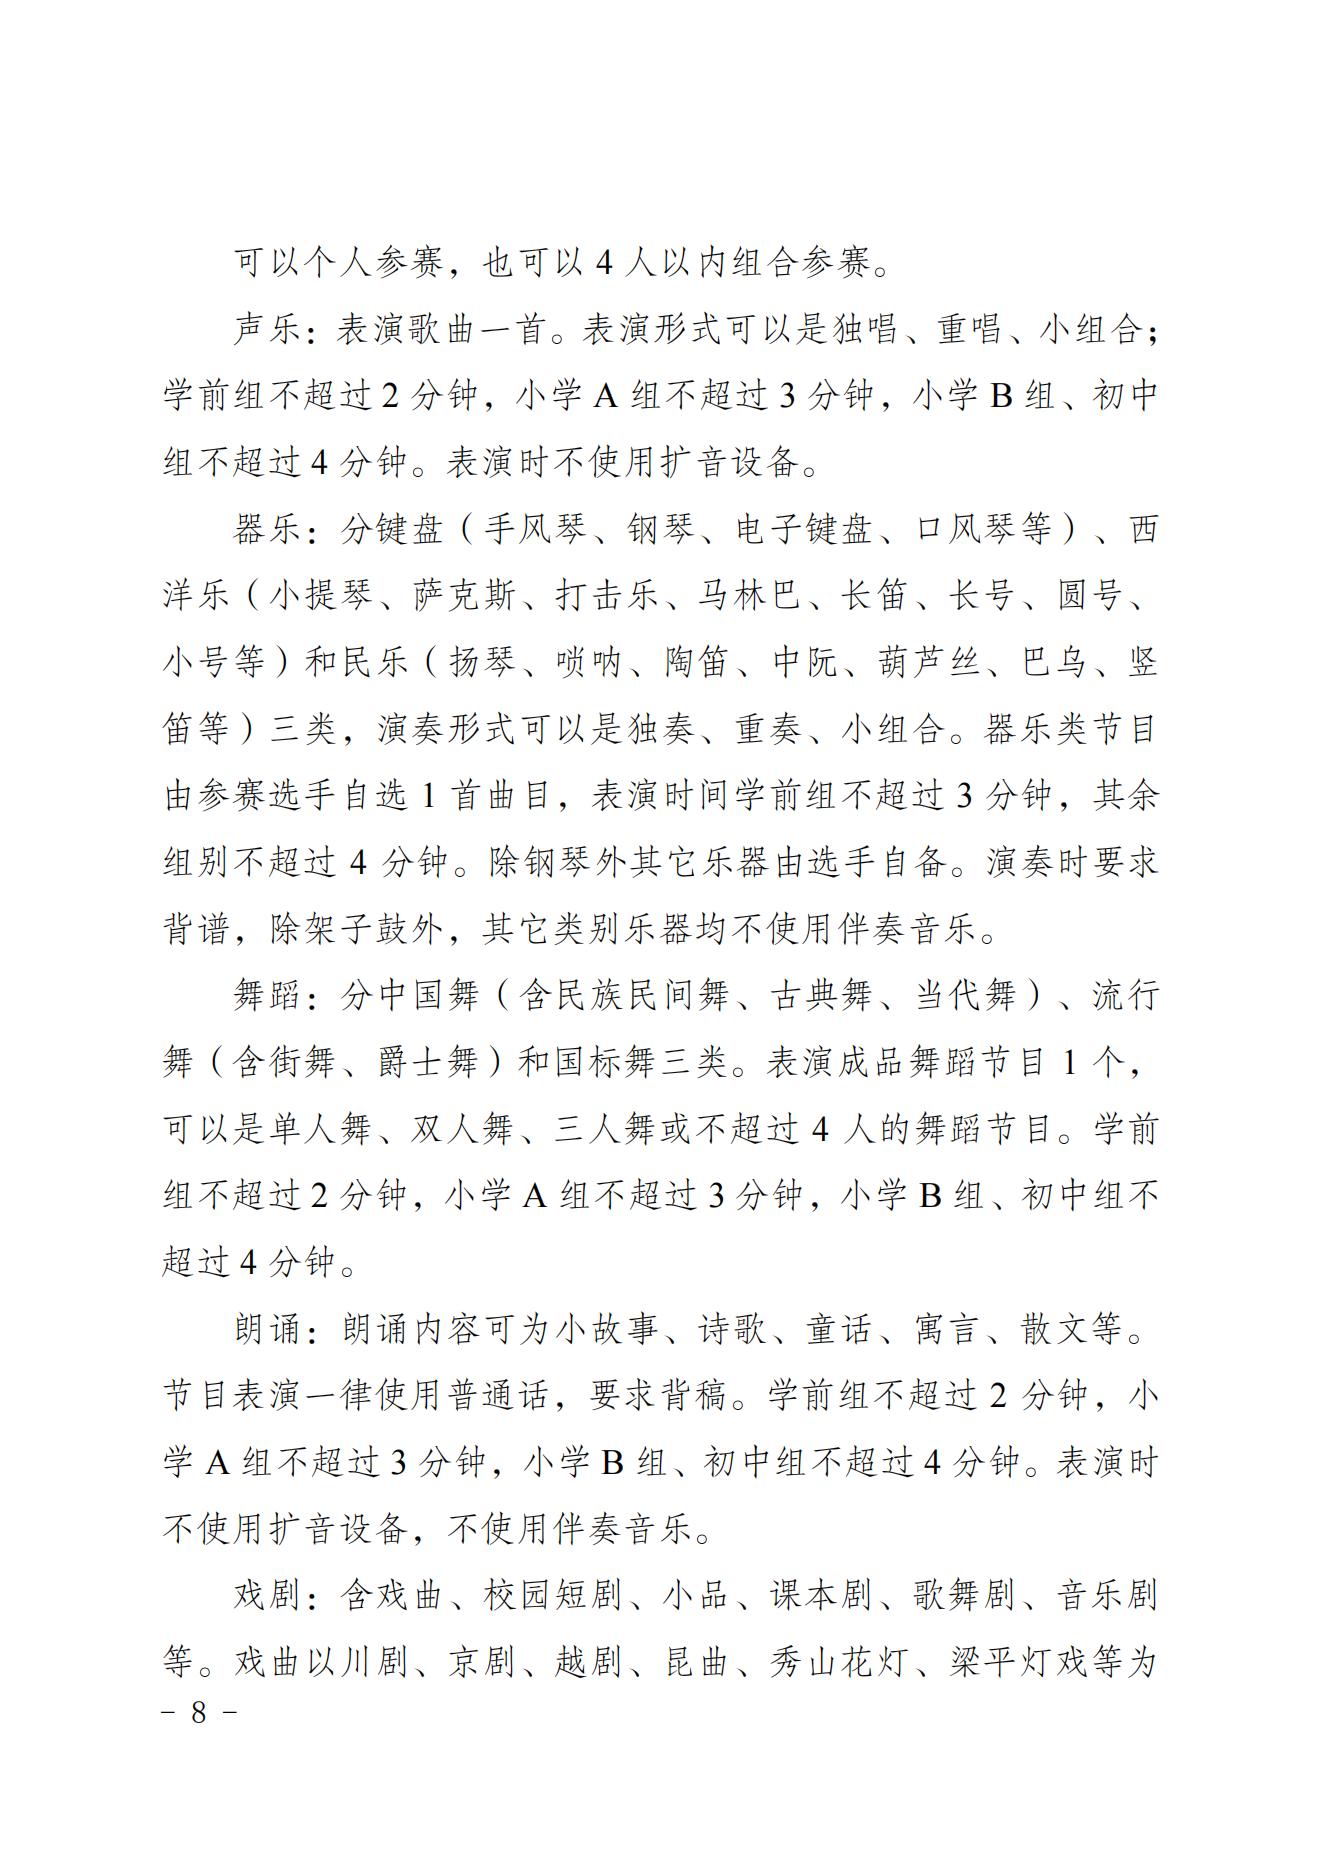 2022共青团重庆市委关于印发重庆市第十七届中小学生才艺大赛活动方案的通知 第8张